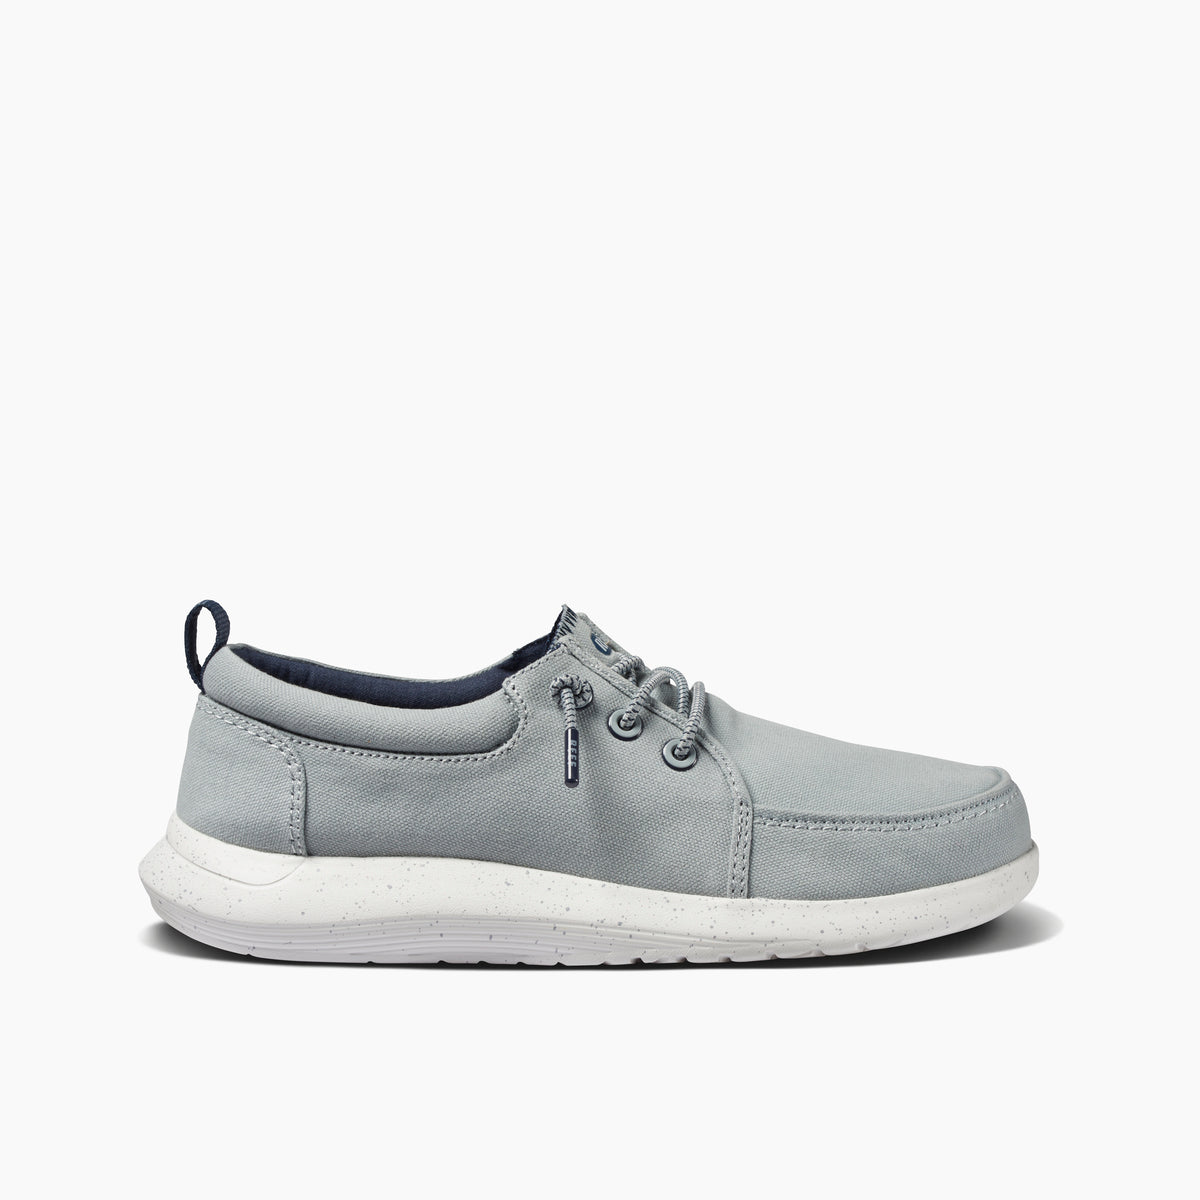 Men's SWELLsole Cutback Shoes in Grey | REEF®